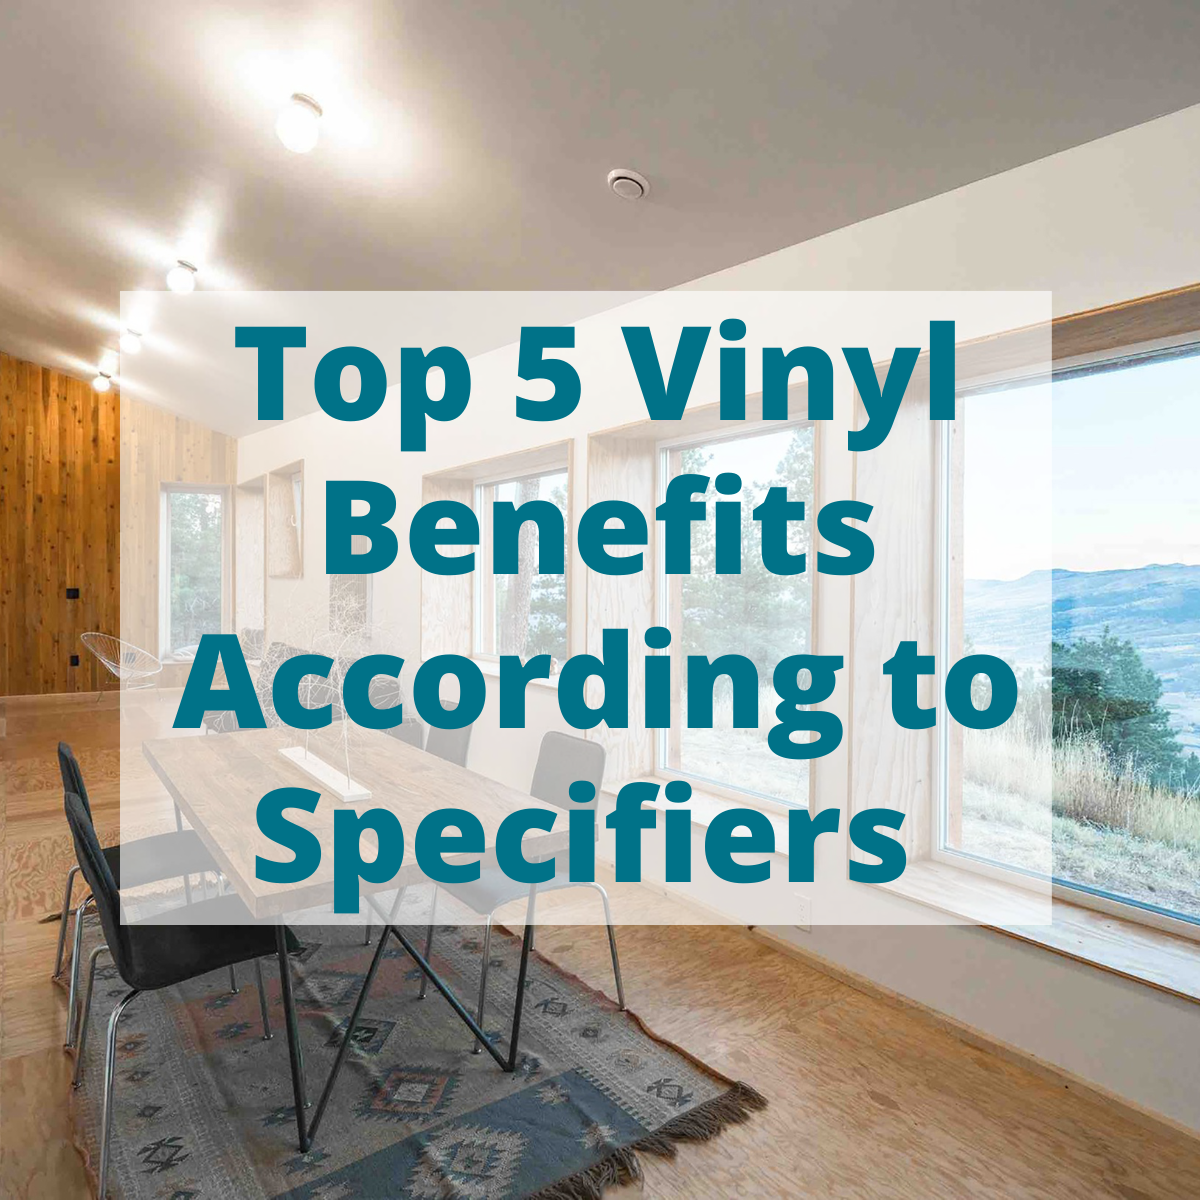 Vinyl Benefits